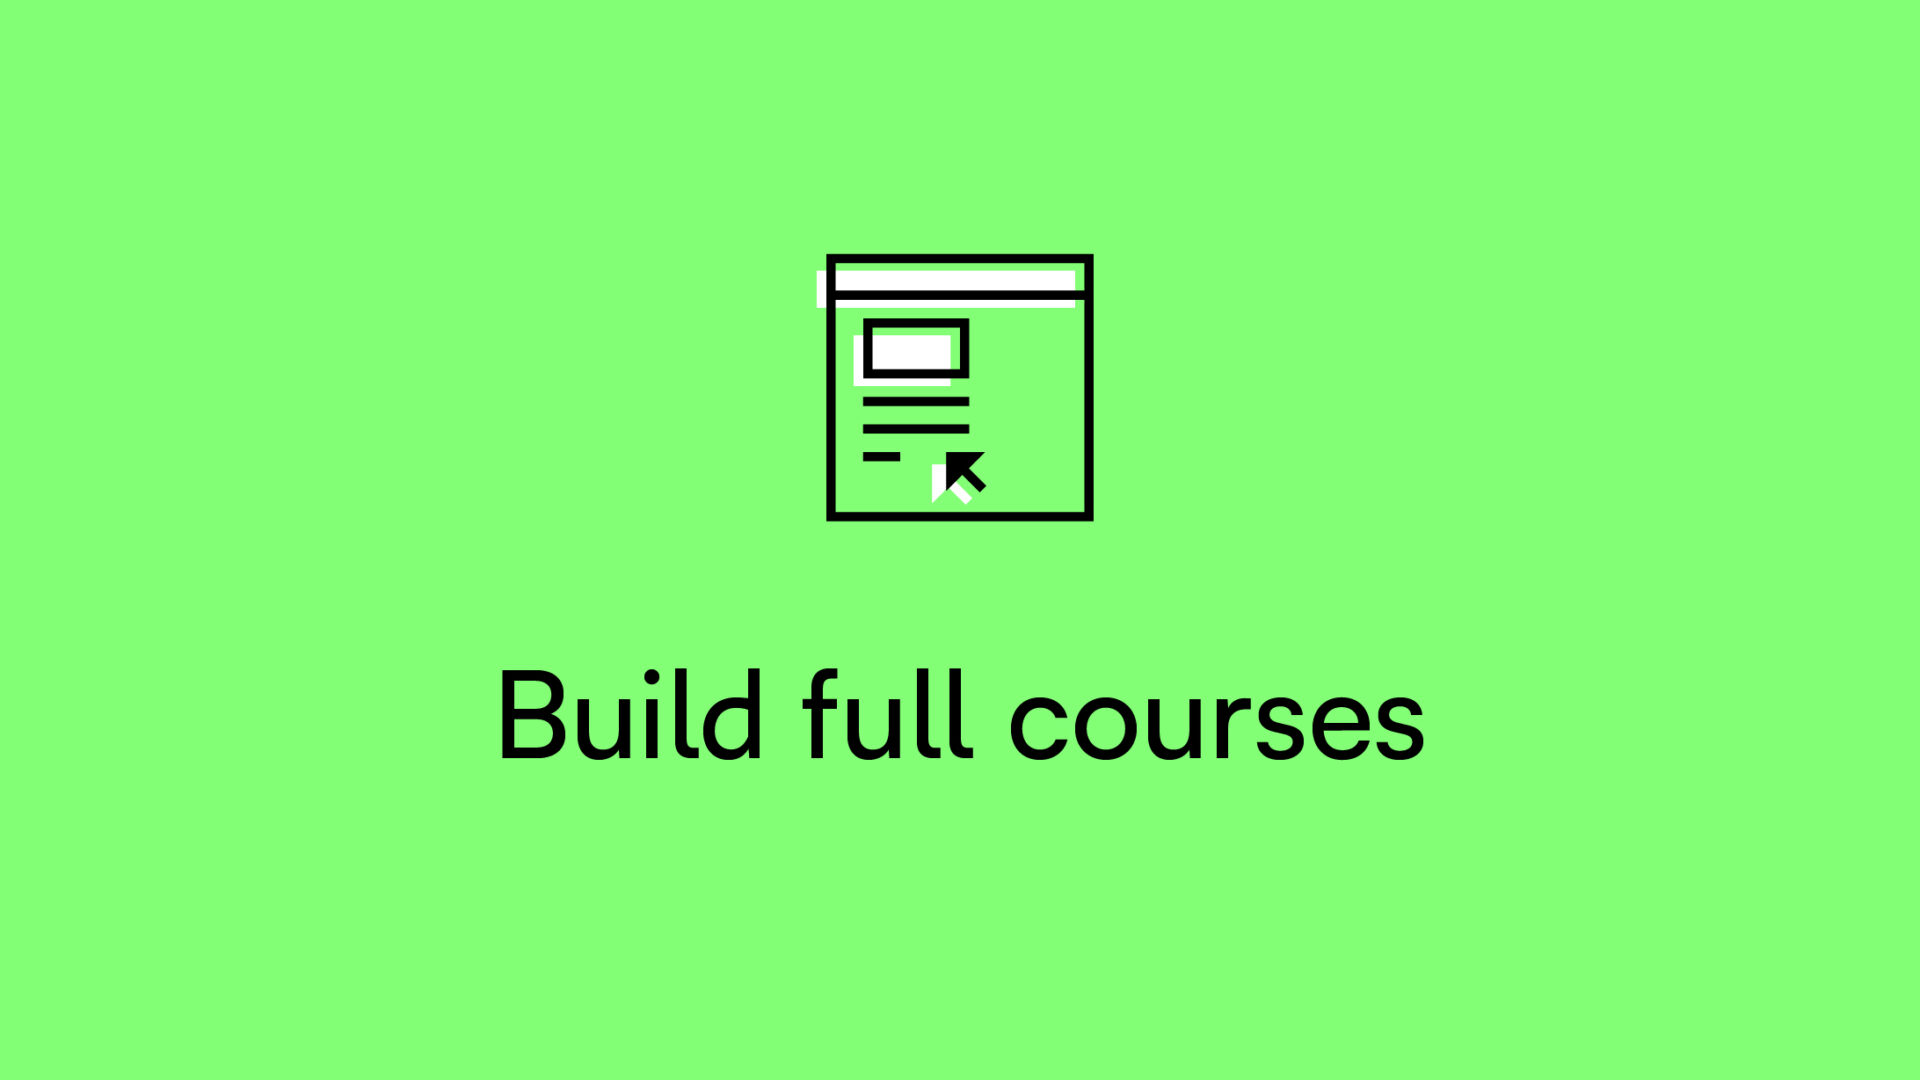 Build full courses